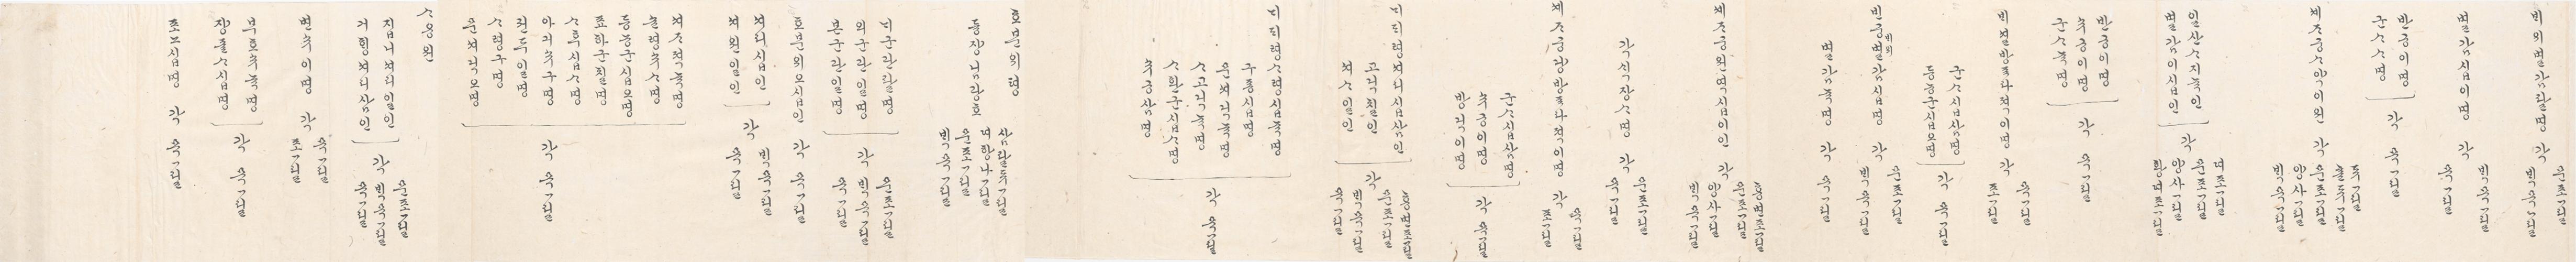 2_1894년 2월 왕세자 탄일 기념 상격 발기 9.jpg